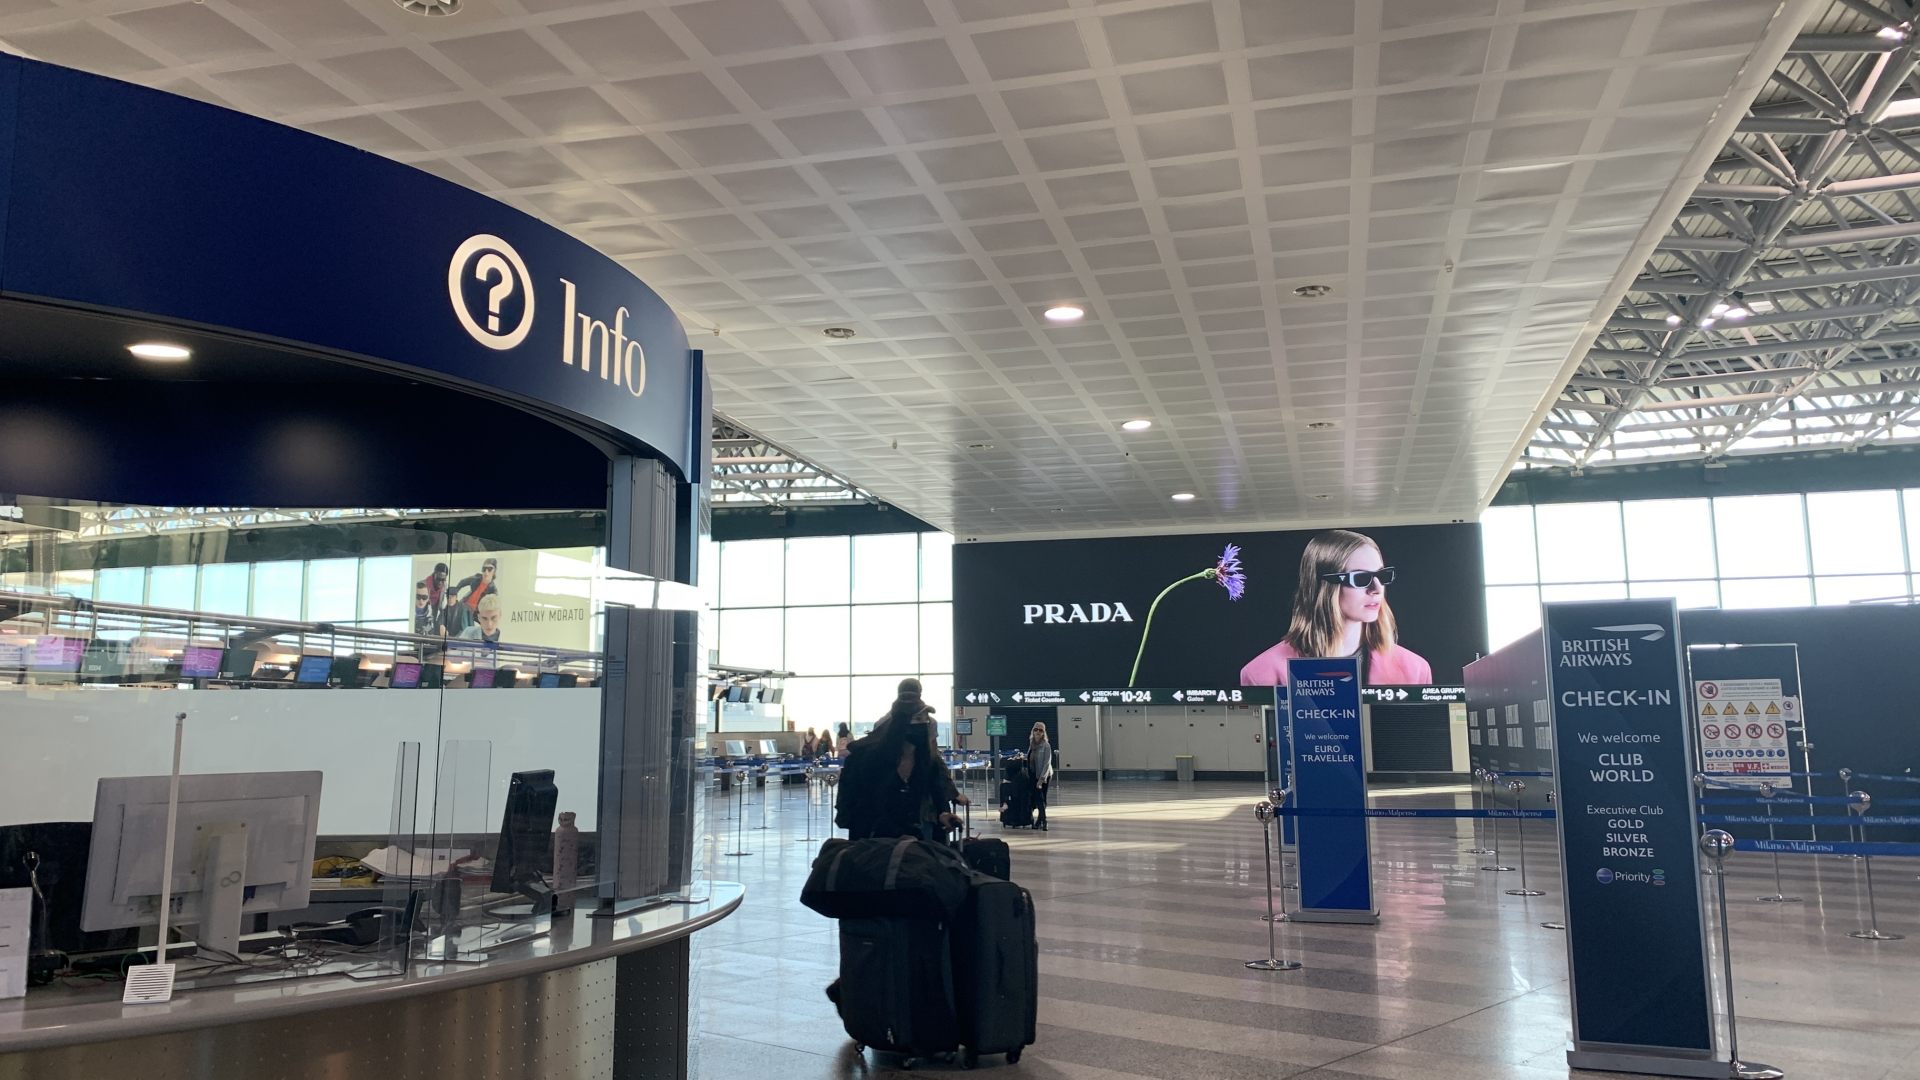 マルペンサ空港はミラノの顔でもあるのでファッションの広告が多い